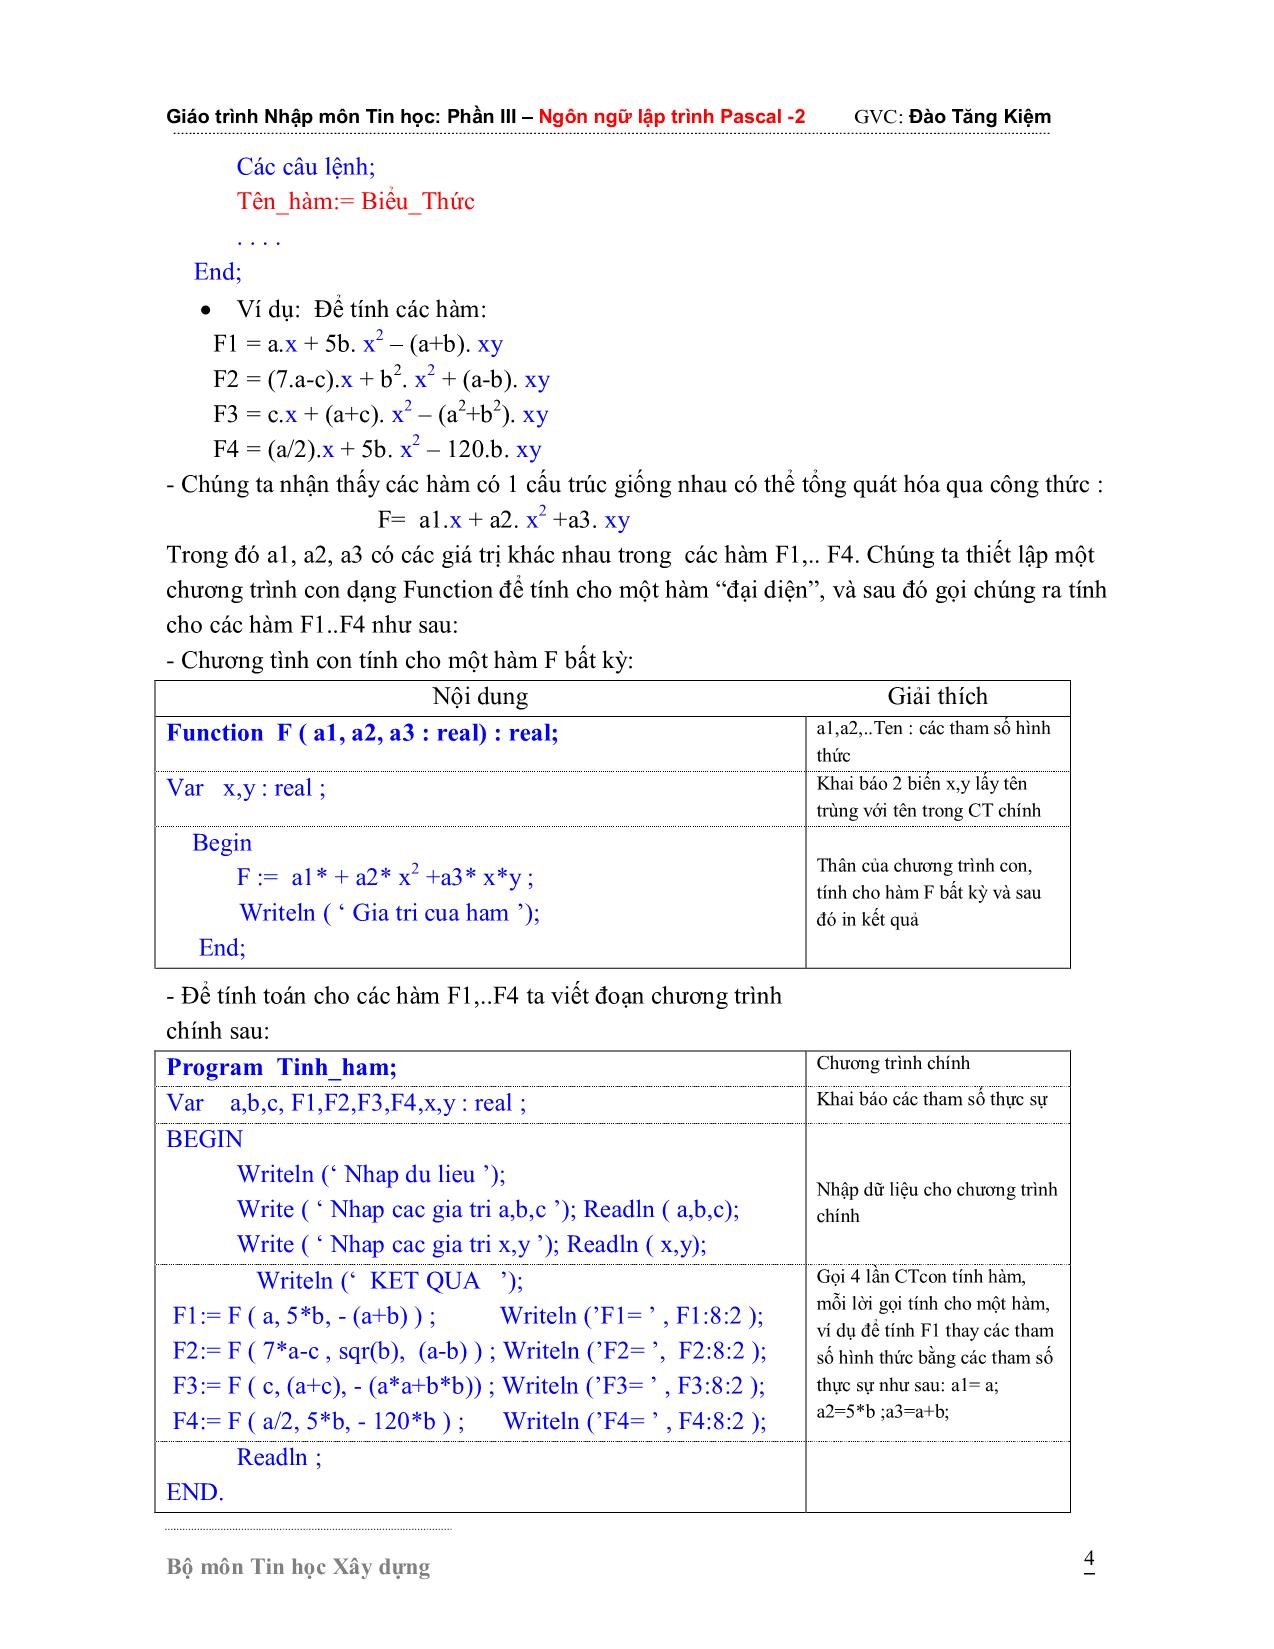 Giáo trình Nhập môn Tin học - Phần 3: Ngôn ngữ lập trình Pascal 2 trang 4